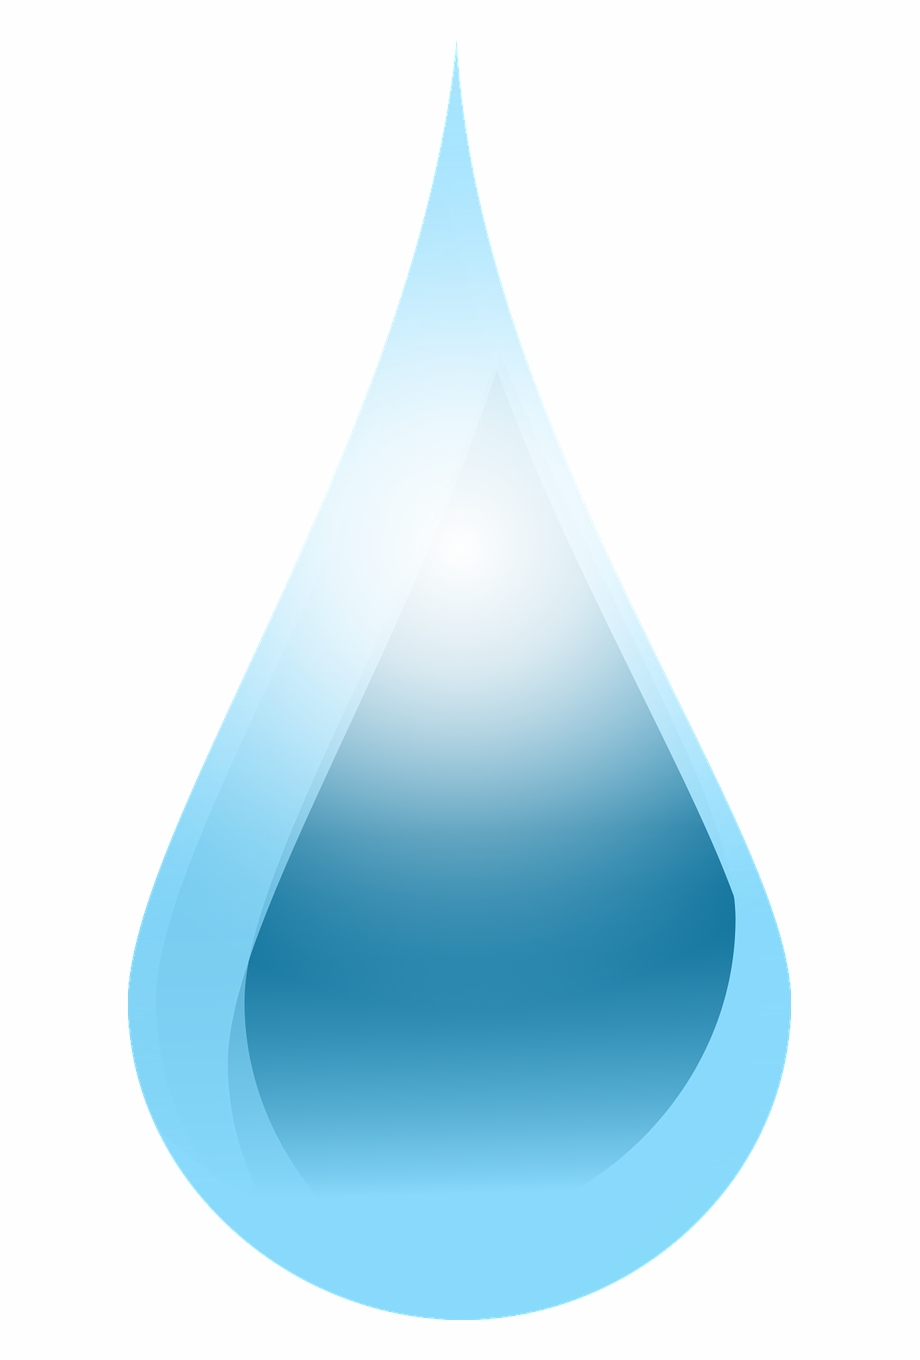 Drop Liquid Water Png Image Water Drop